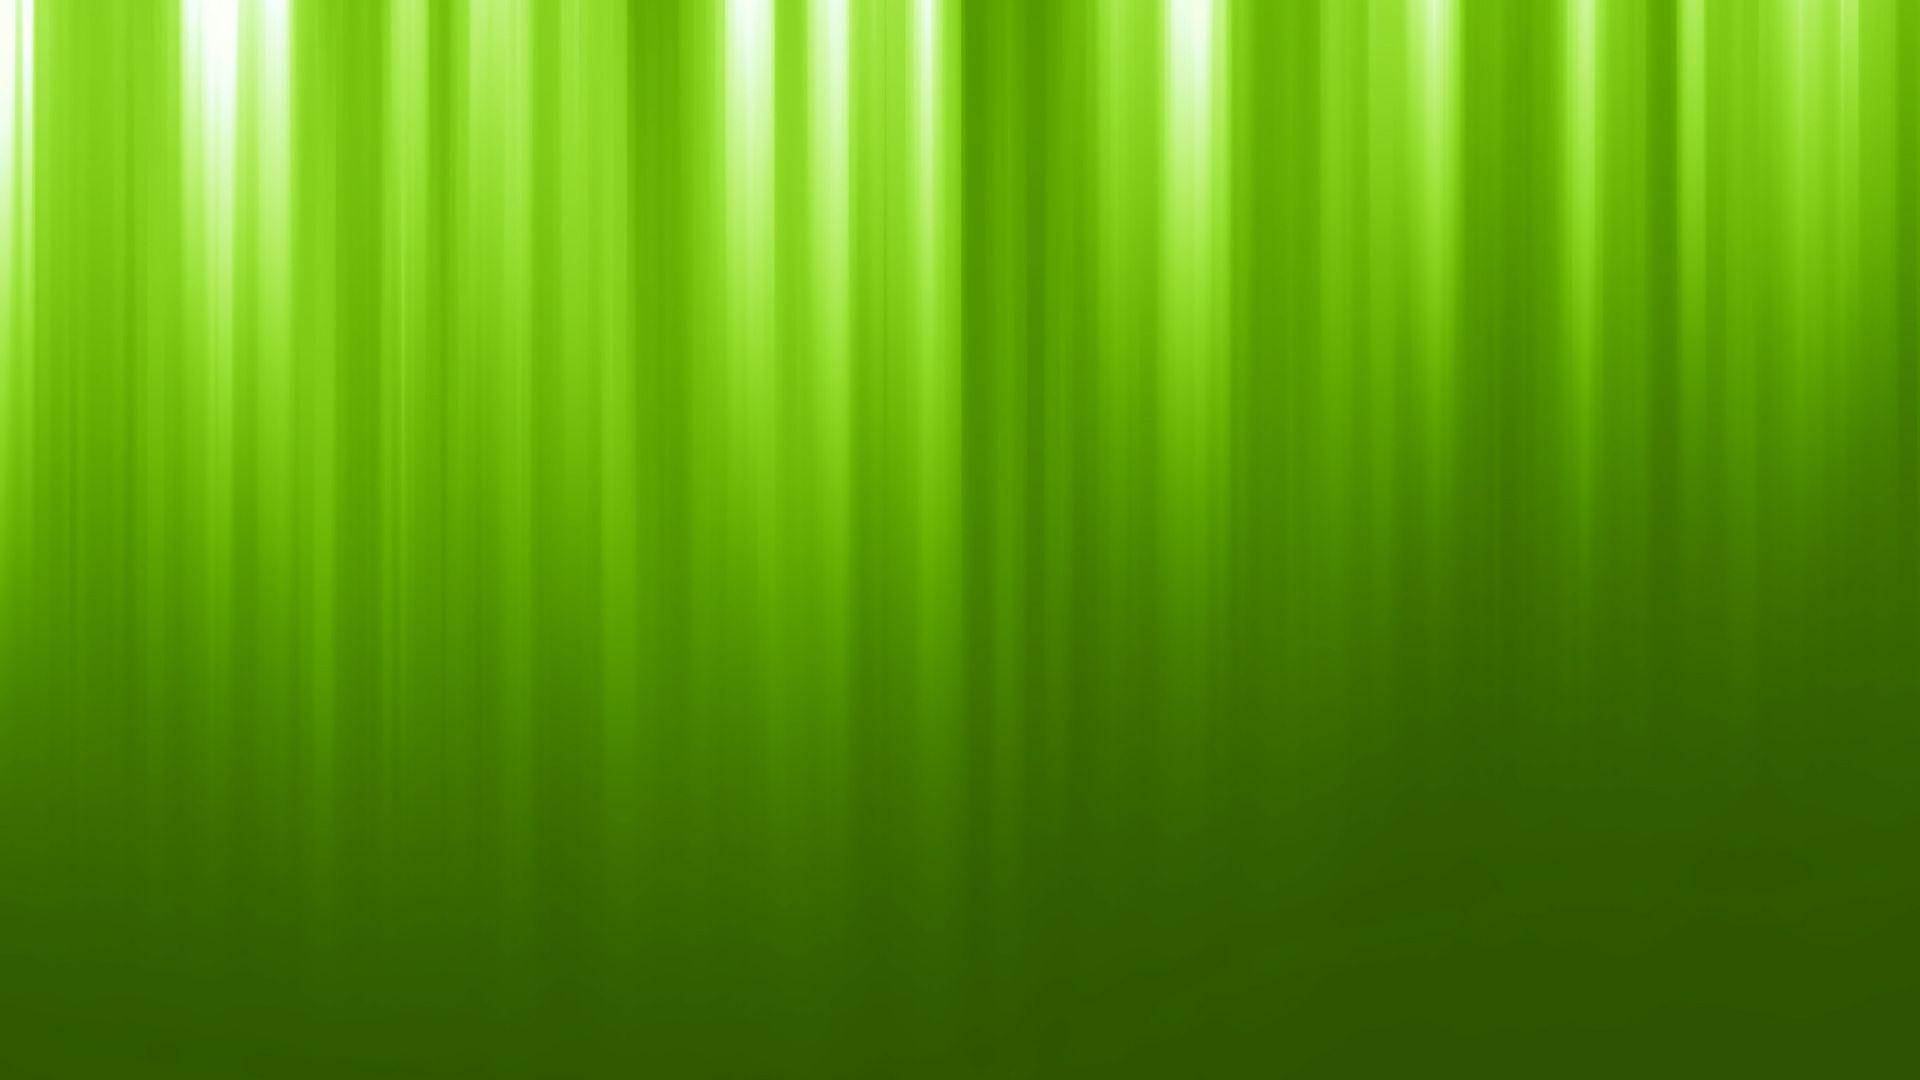 Green Wallpaper 17313 1920x1080 px